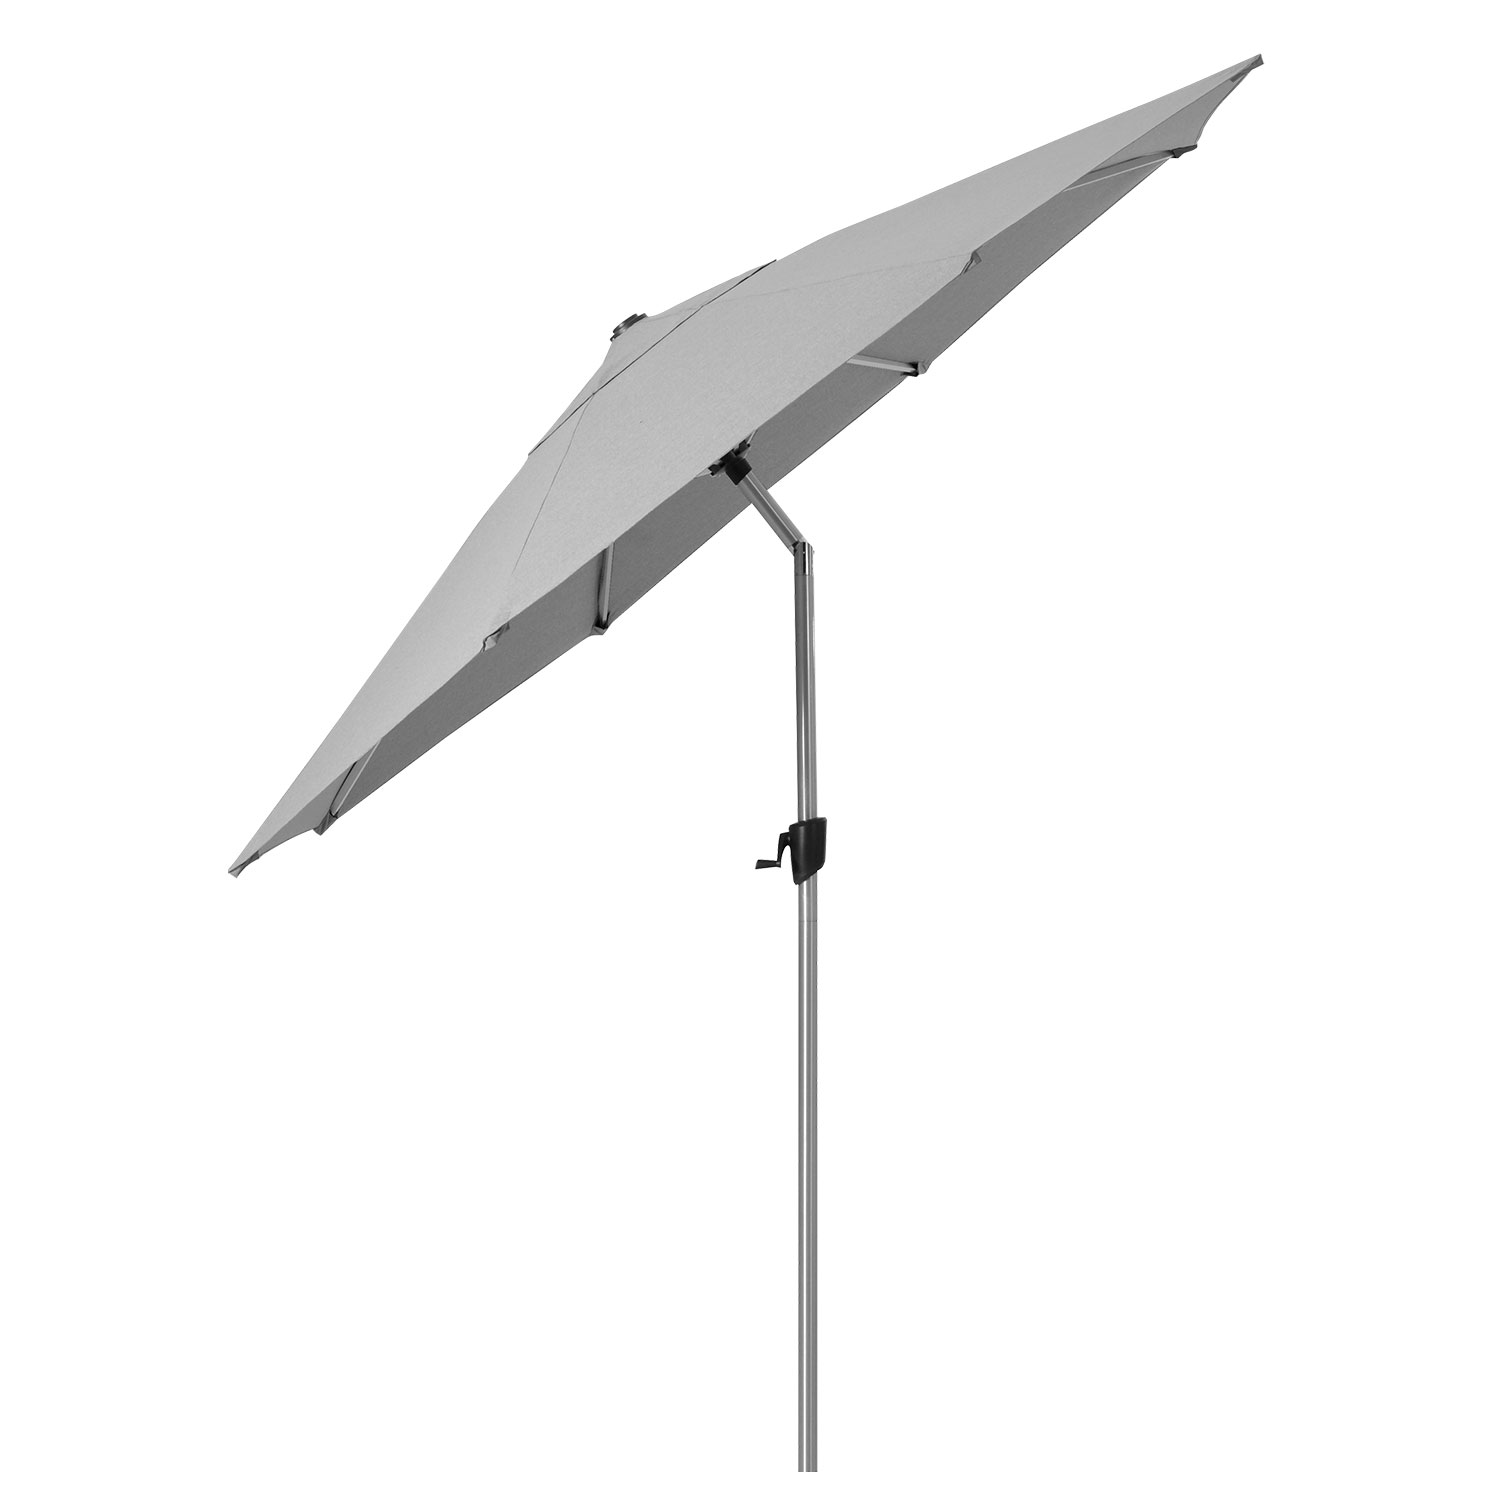 Cane-Line Sunshade parasoll 300 cm Light grey